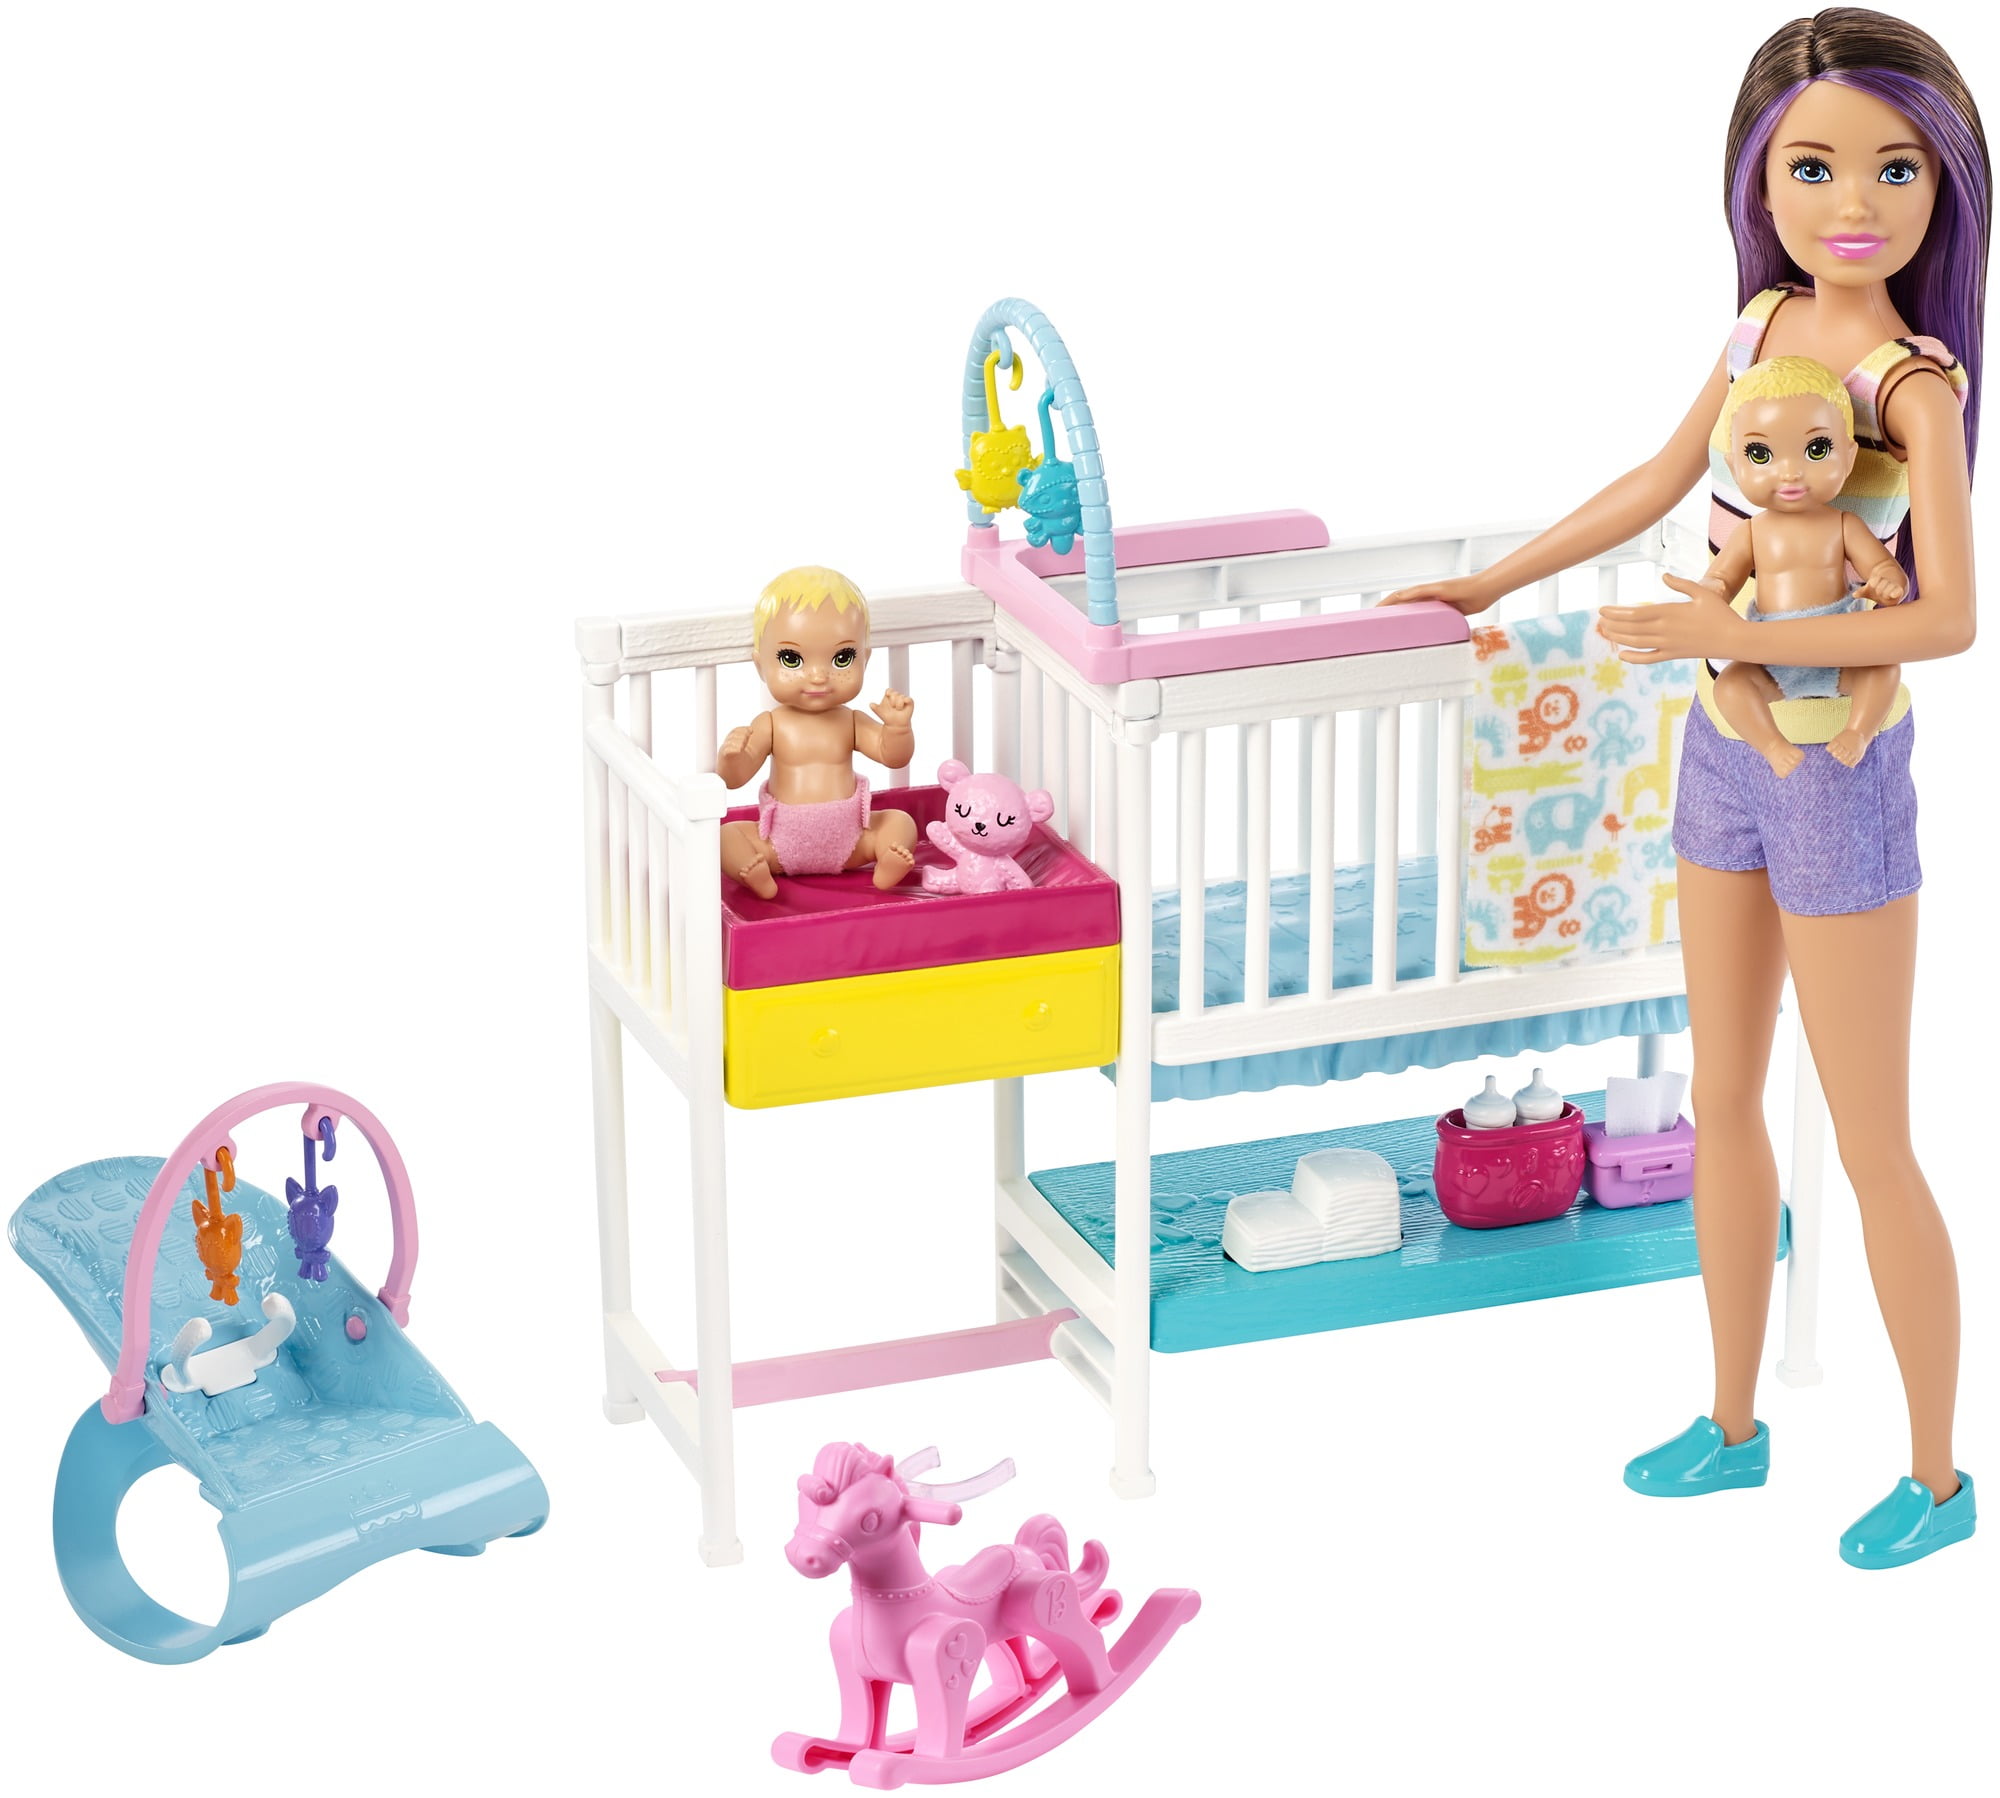 Uitdrukkelijk Uitgaan Wakker worden Barbie Skipper Babysitters Inc Nap n Nurture Nursery Playset with Brunette  Doll, Baby & Accessories - Walmart.com